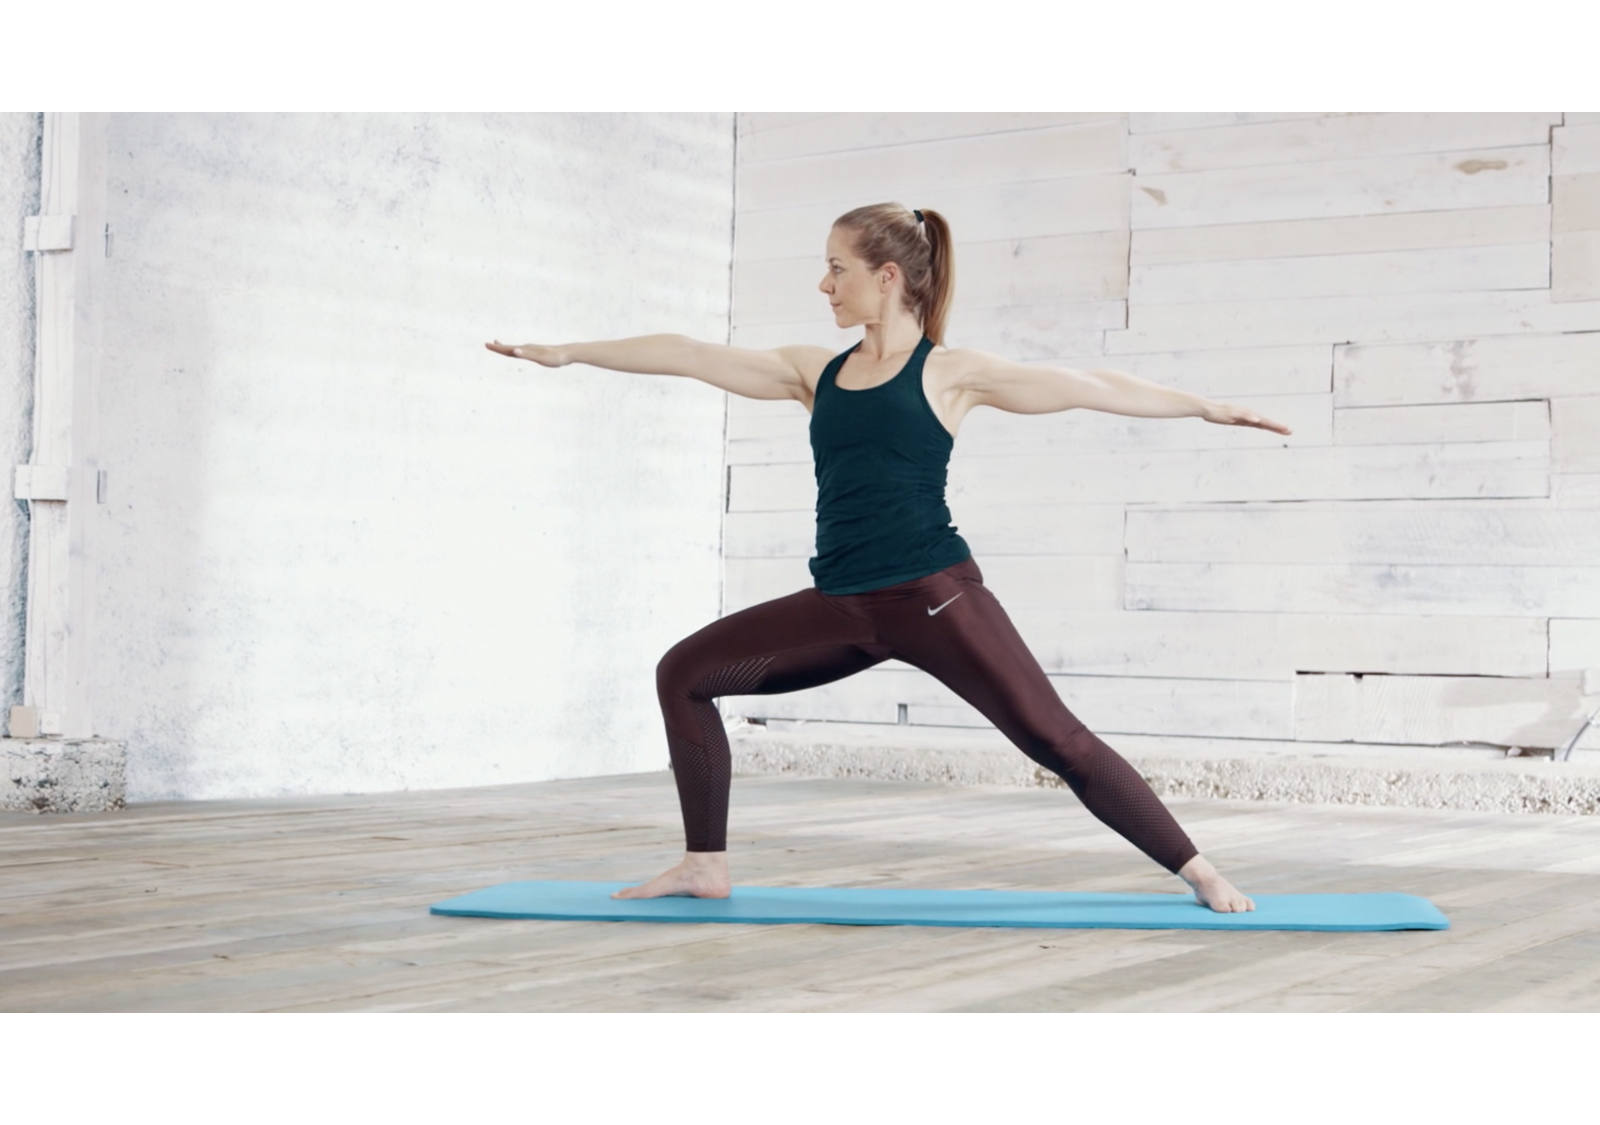 Verdauung anregen: Zehn Minuten Yoga-Flow